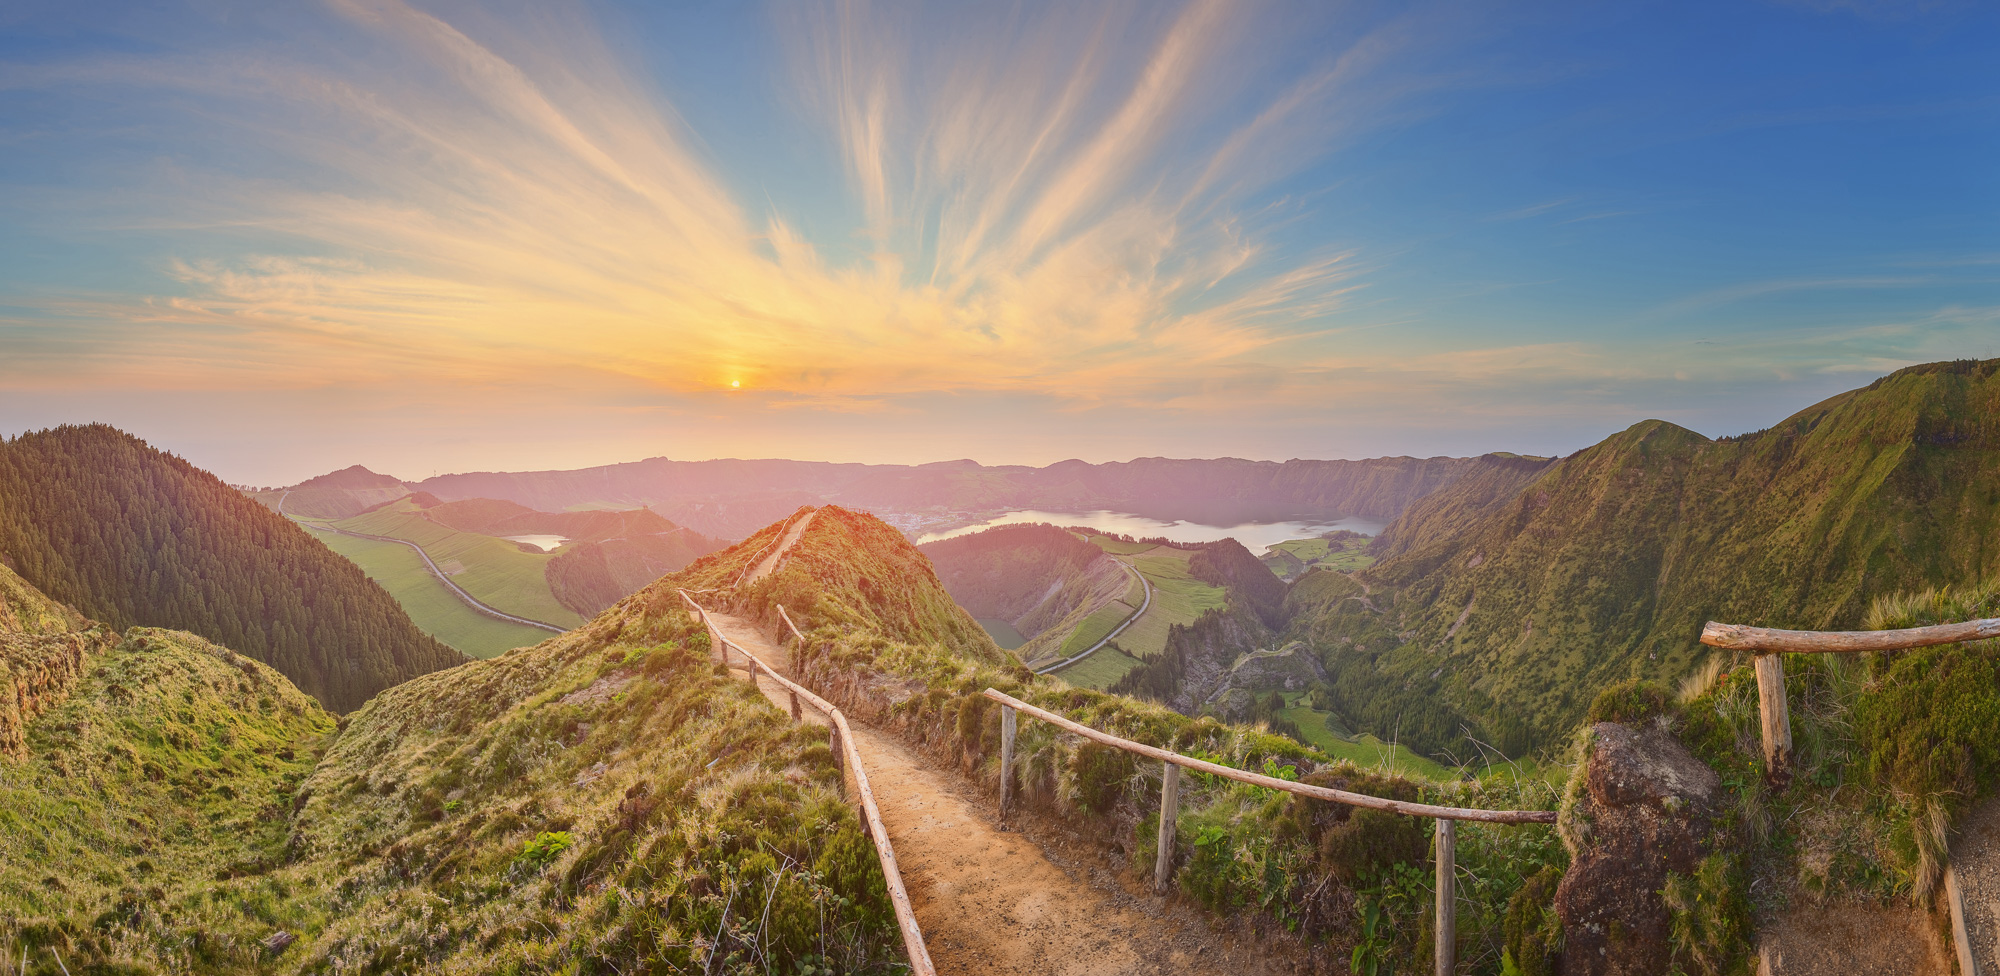 Azoren - Highlights, Reisezeit & die schönsten Bilder | Hello Planet